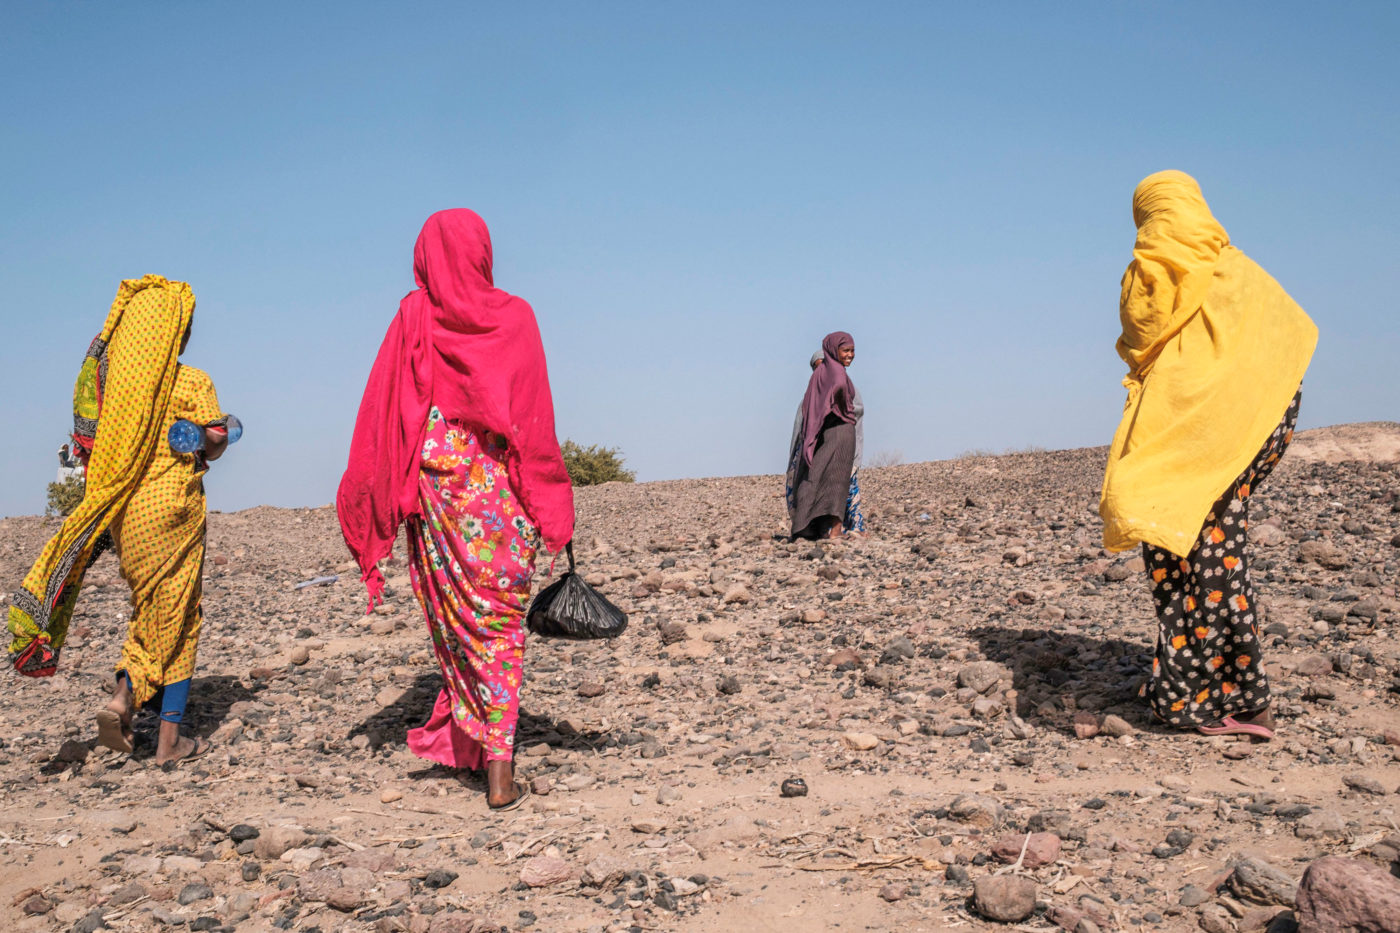 Naisia kävelemässä kuivalla maalla.